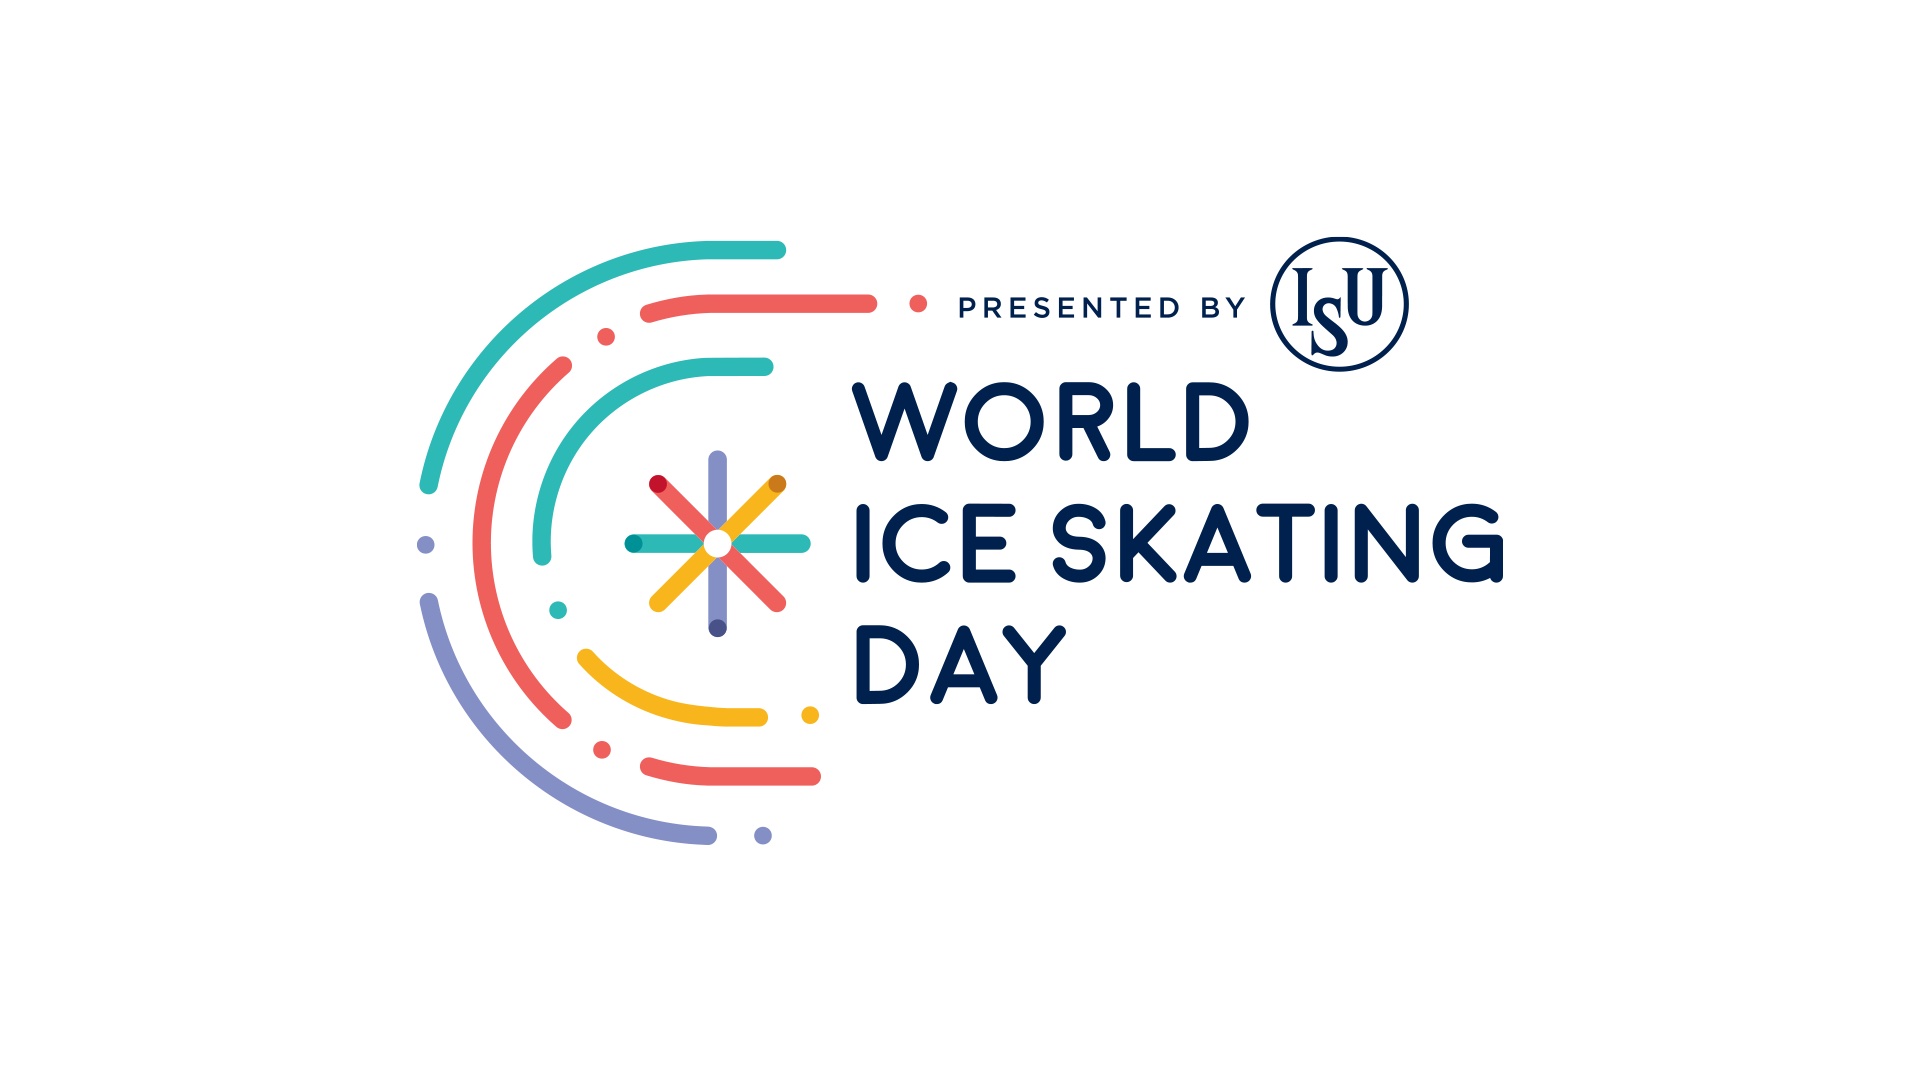 Pročitajte više o članku WISD – Svjetski dan klizanja na ledu 04.12.2022.